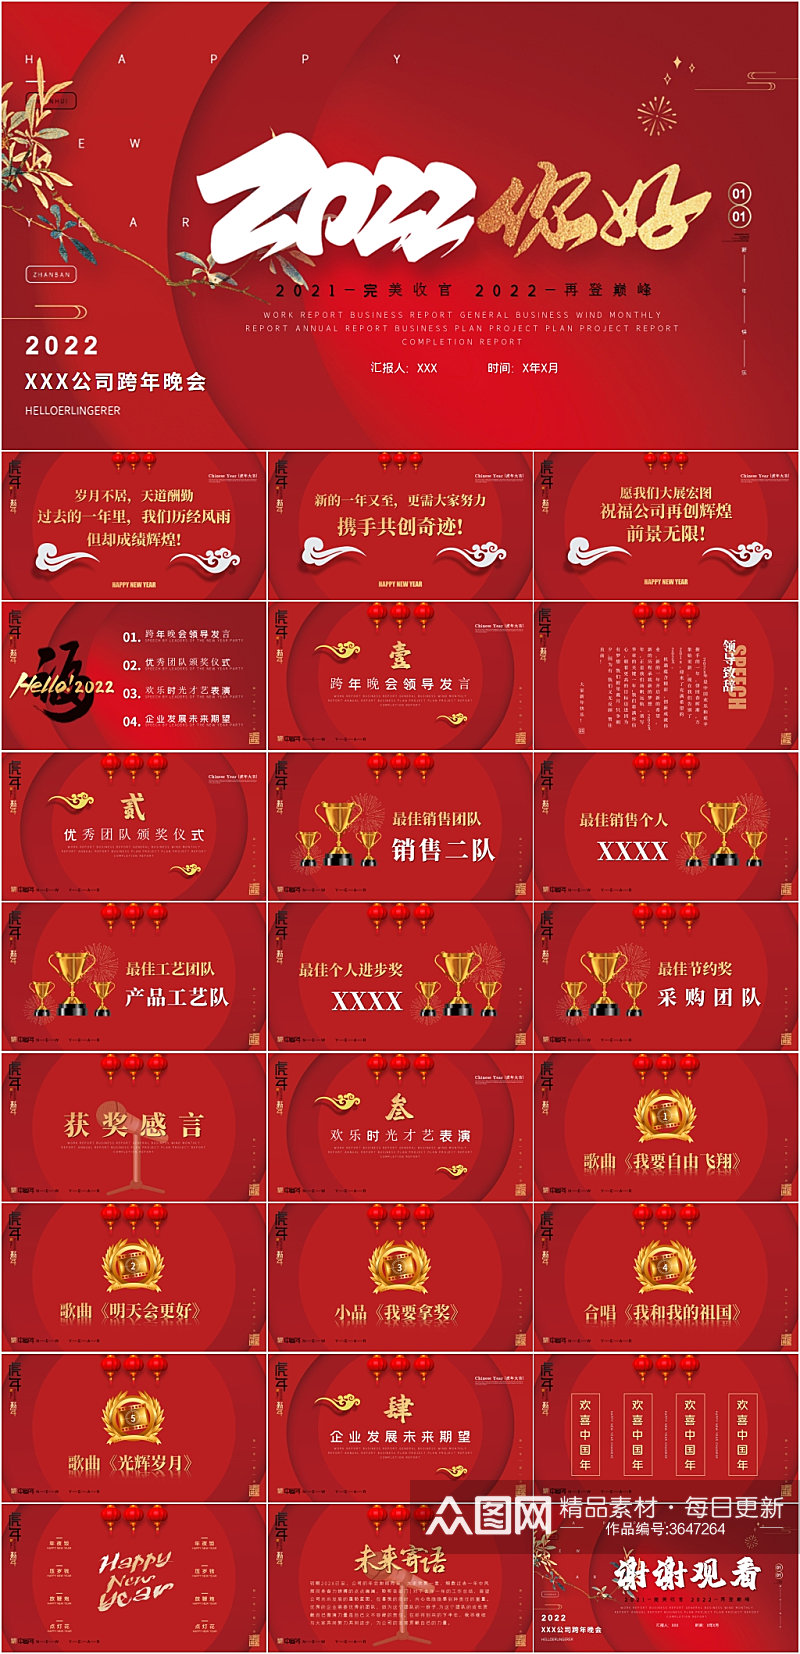 红色中国风企业跨年晚会颁奖典礼PPT模板素材